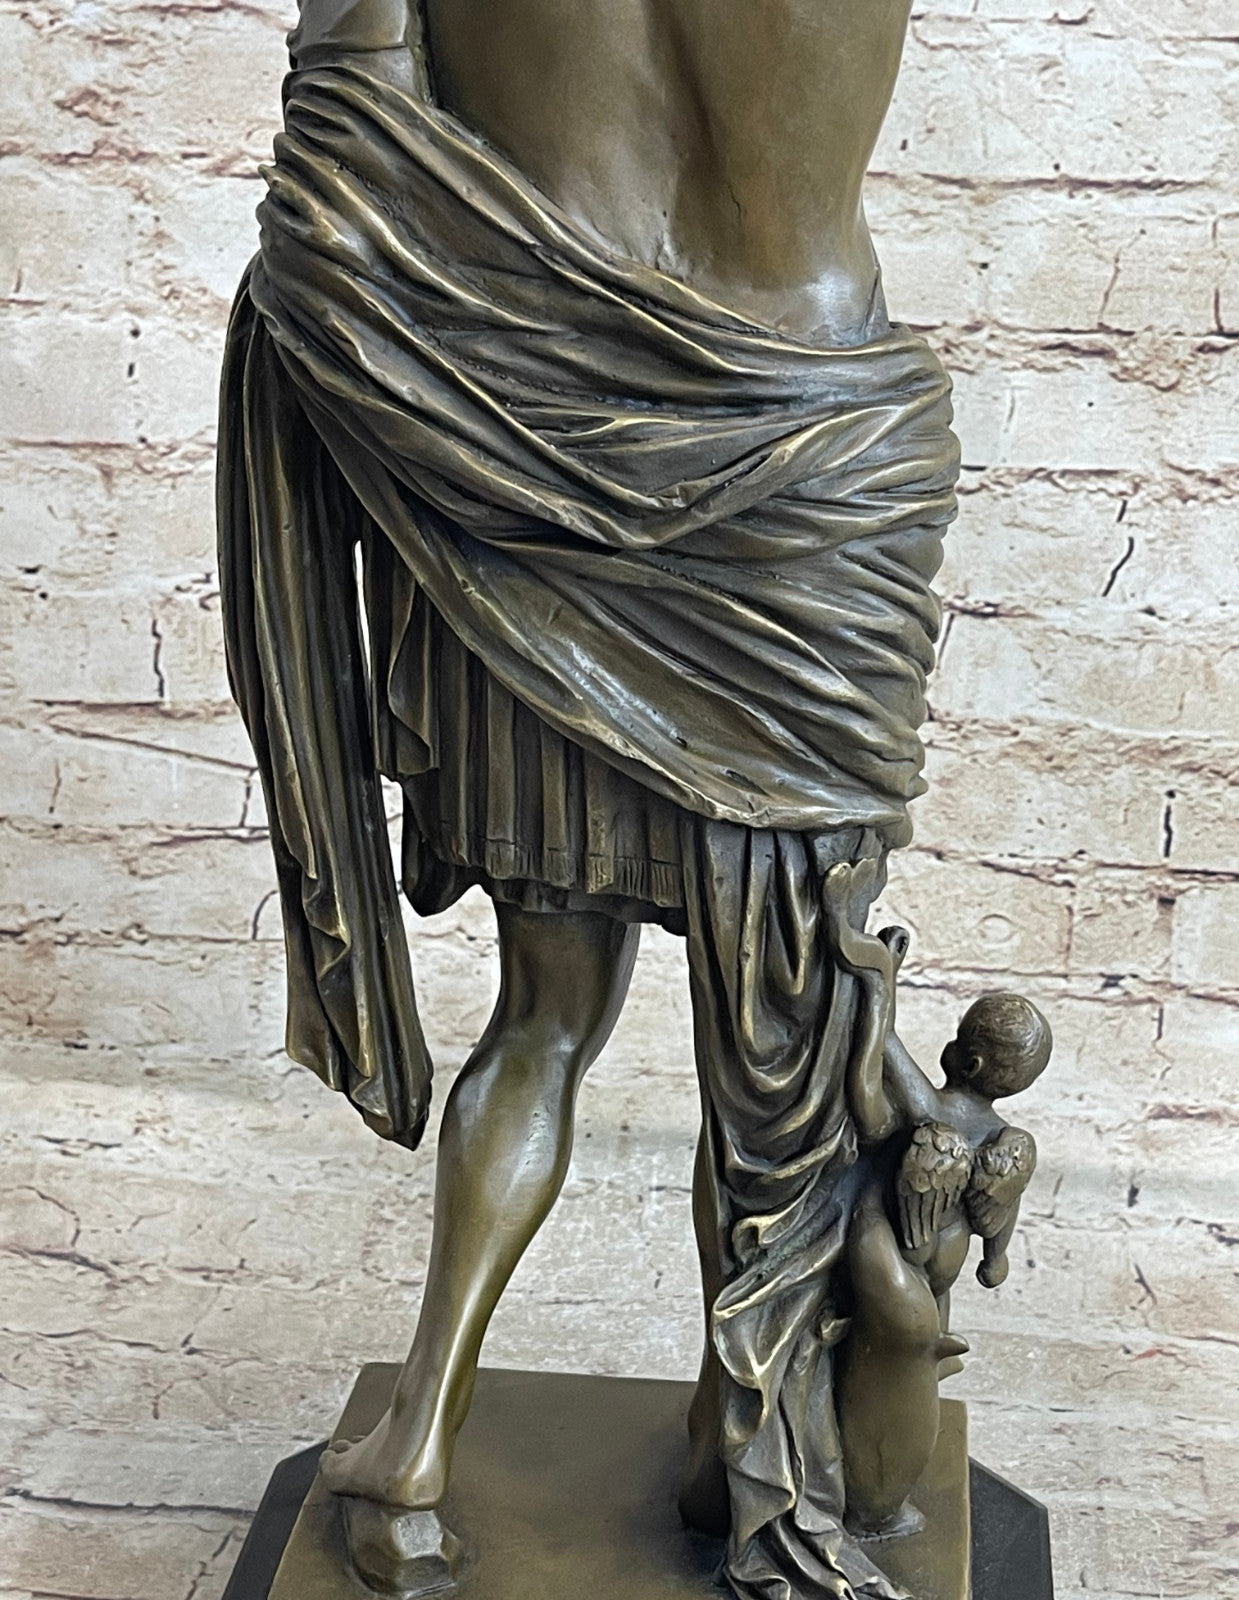 Hot Cast Large Emperor Julius Caesar Bronze Sculpture Marble Base Figurine SALE